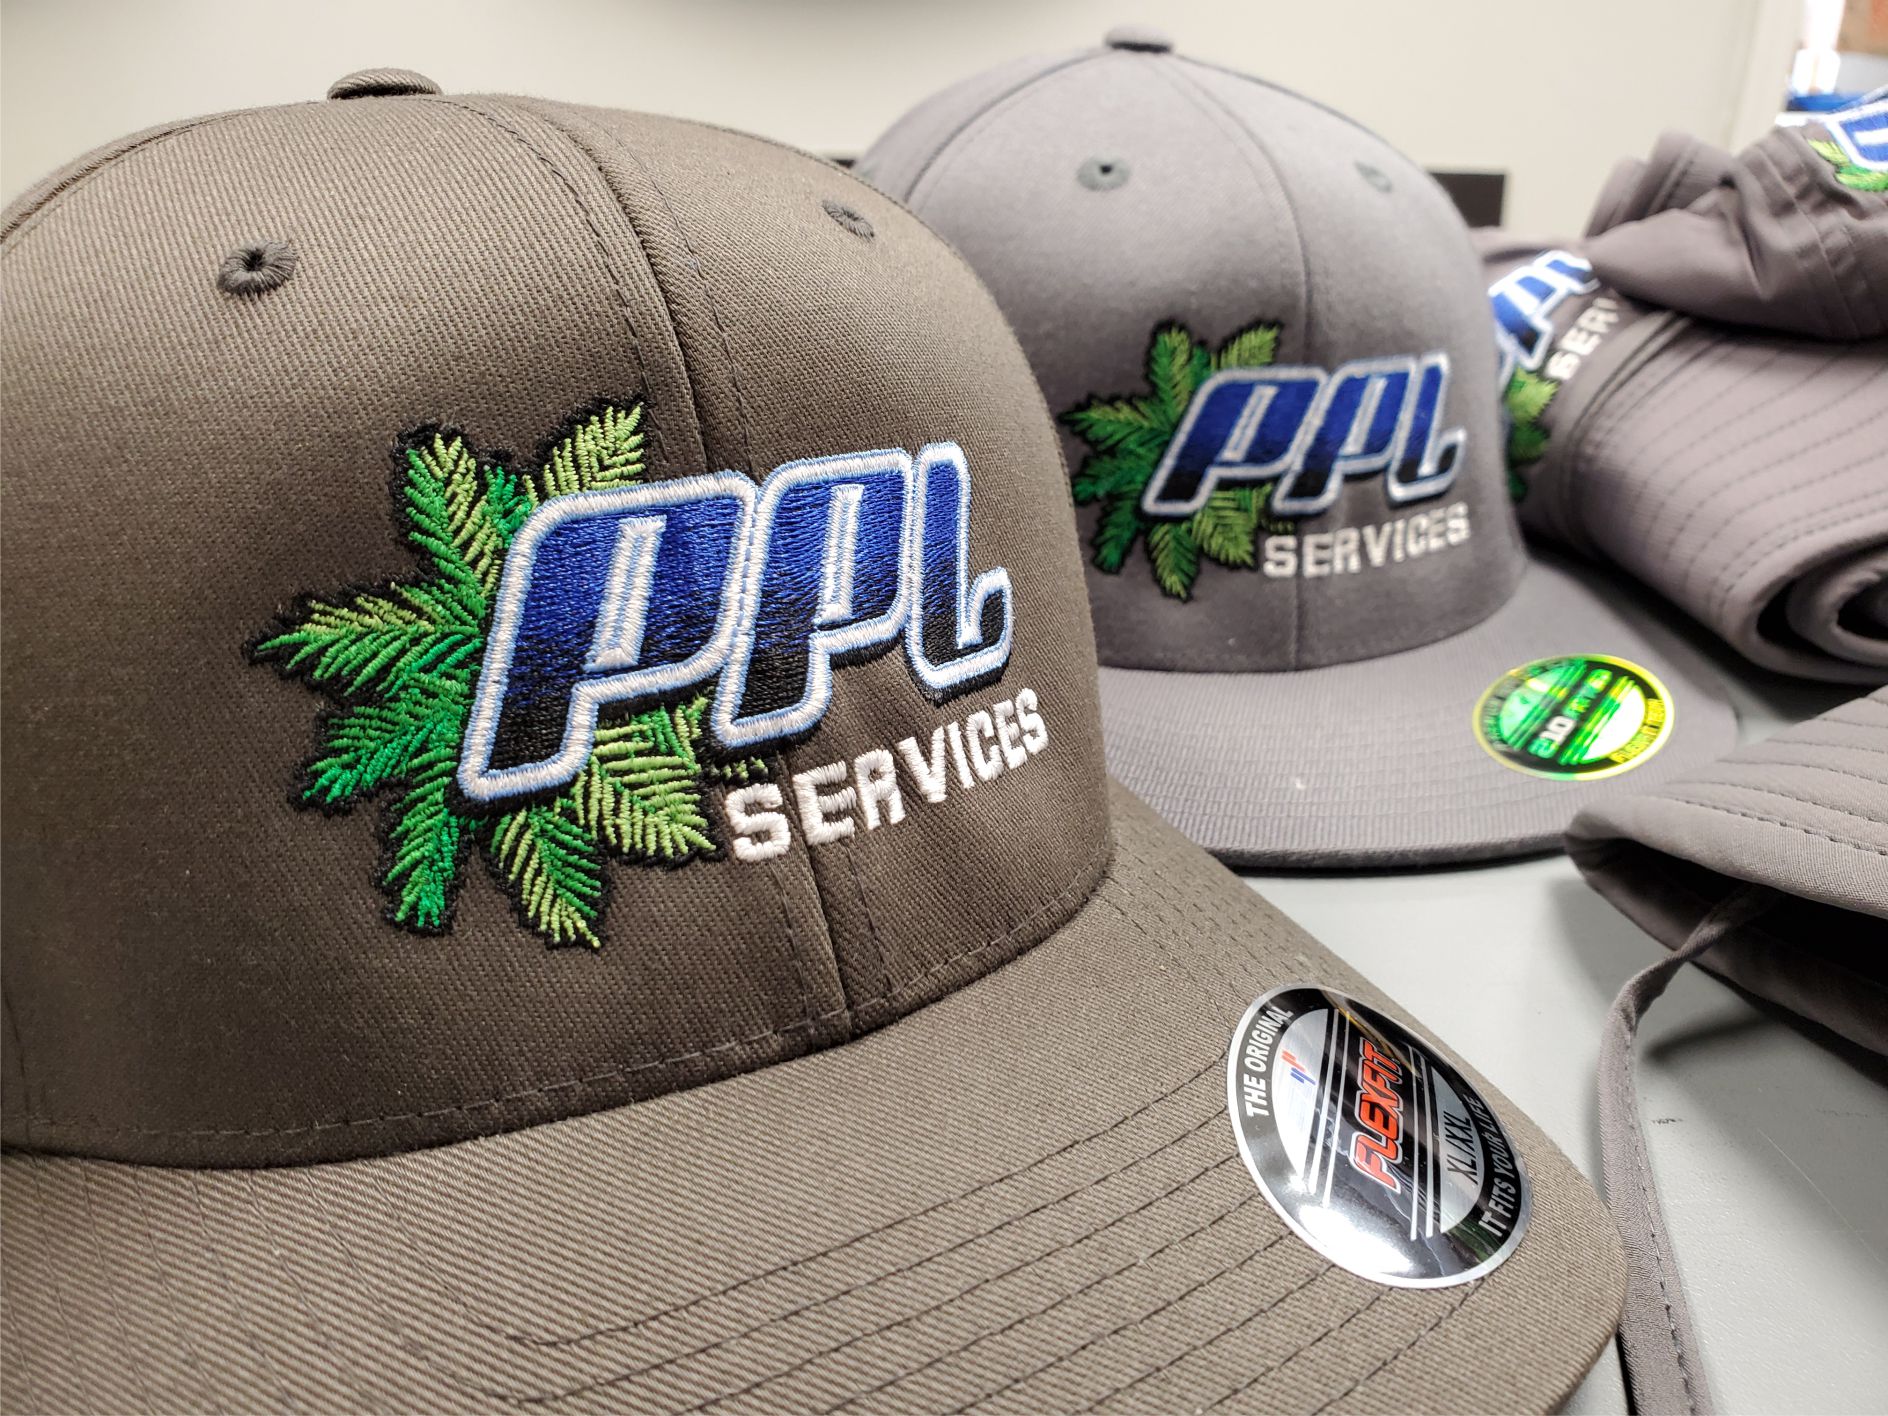 PPL Services hat